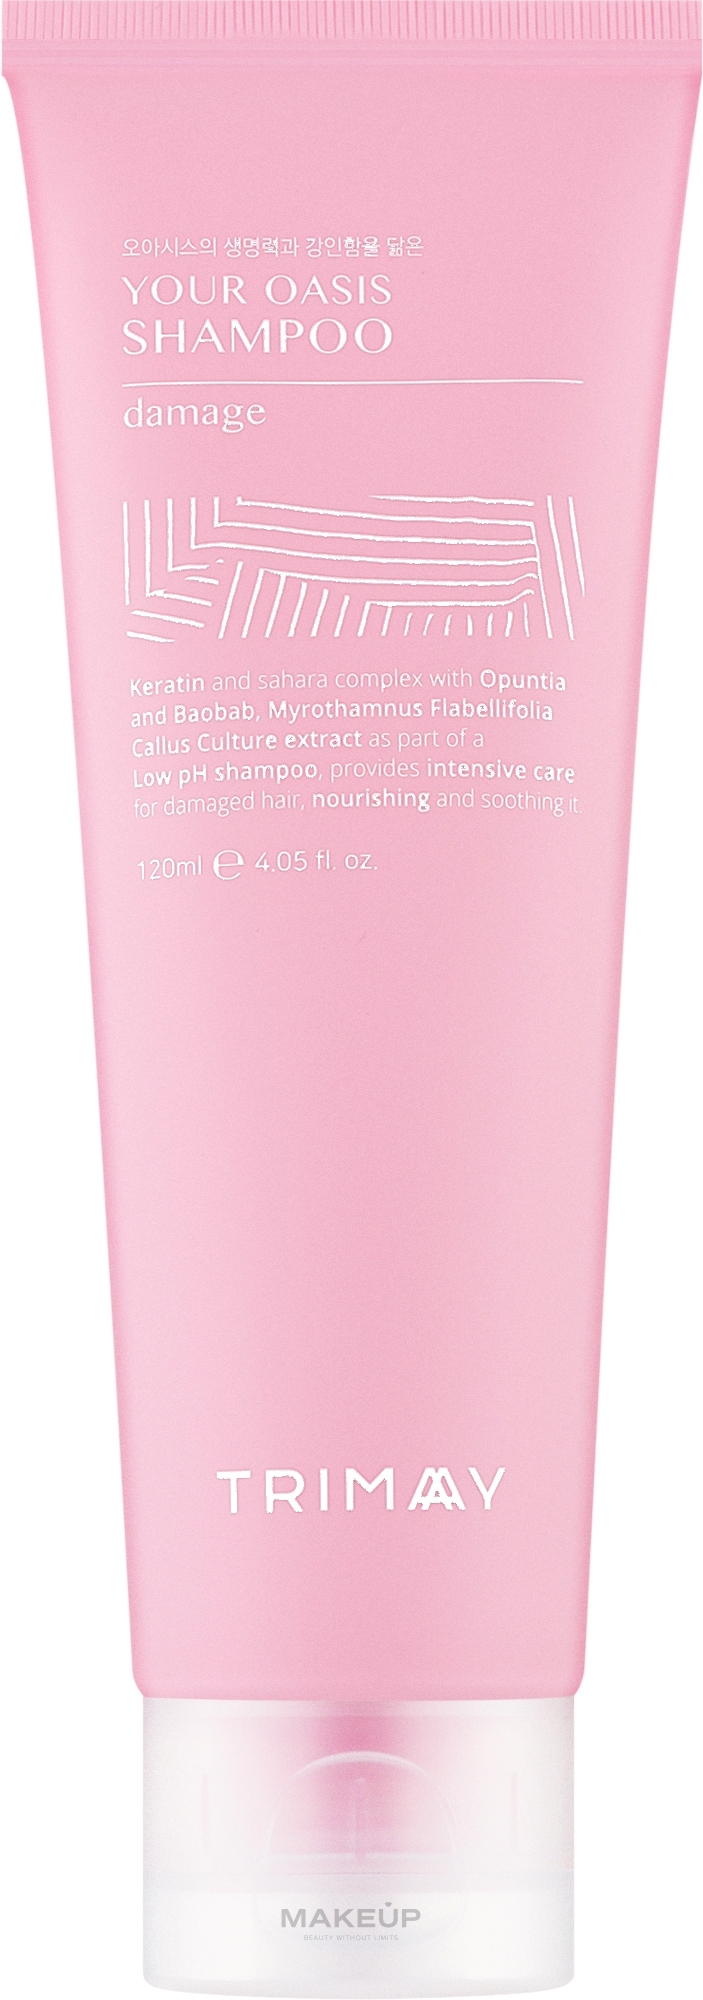 Бессульфатный кератиновый шампунь для волос - Trimay Your Oasis Shampoo Damage Keratin — фото 120ml